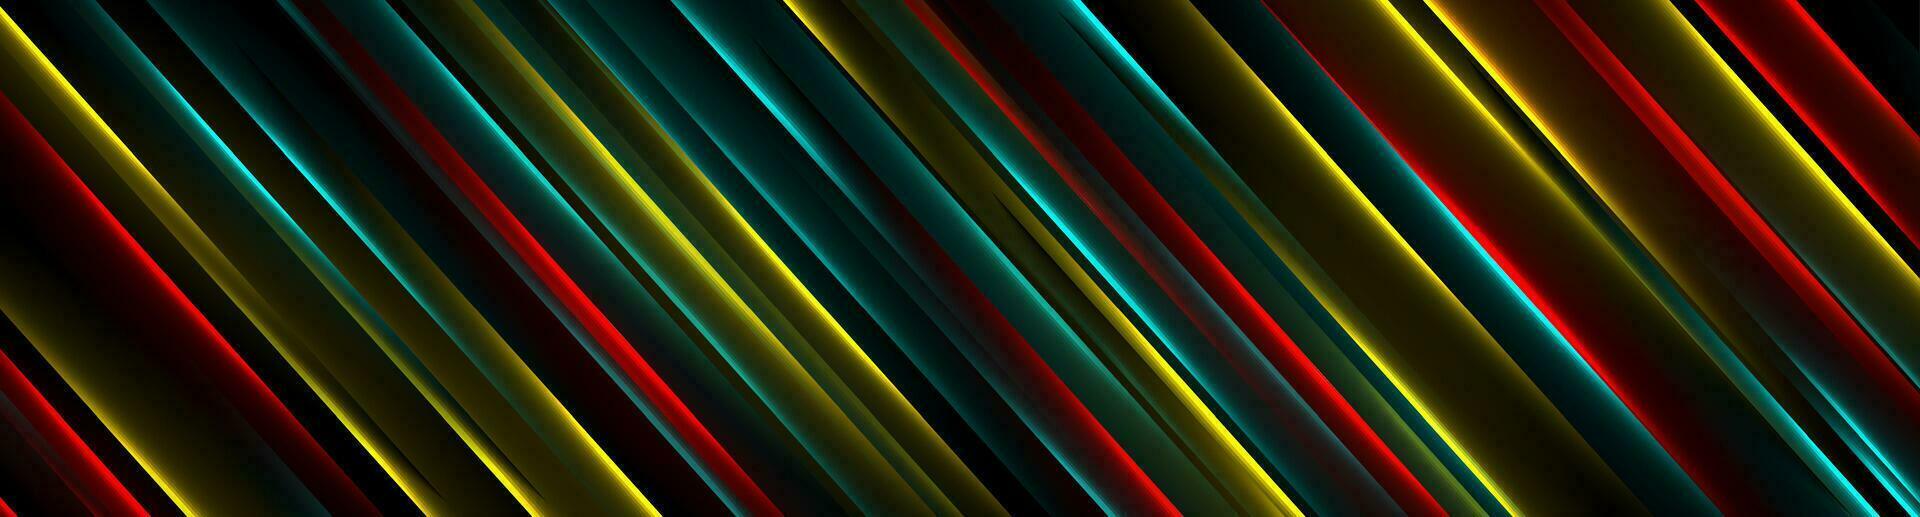 colorida futurista néon linhas abstrato oi-tech bandeira vetor